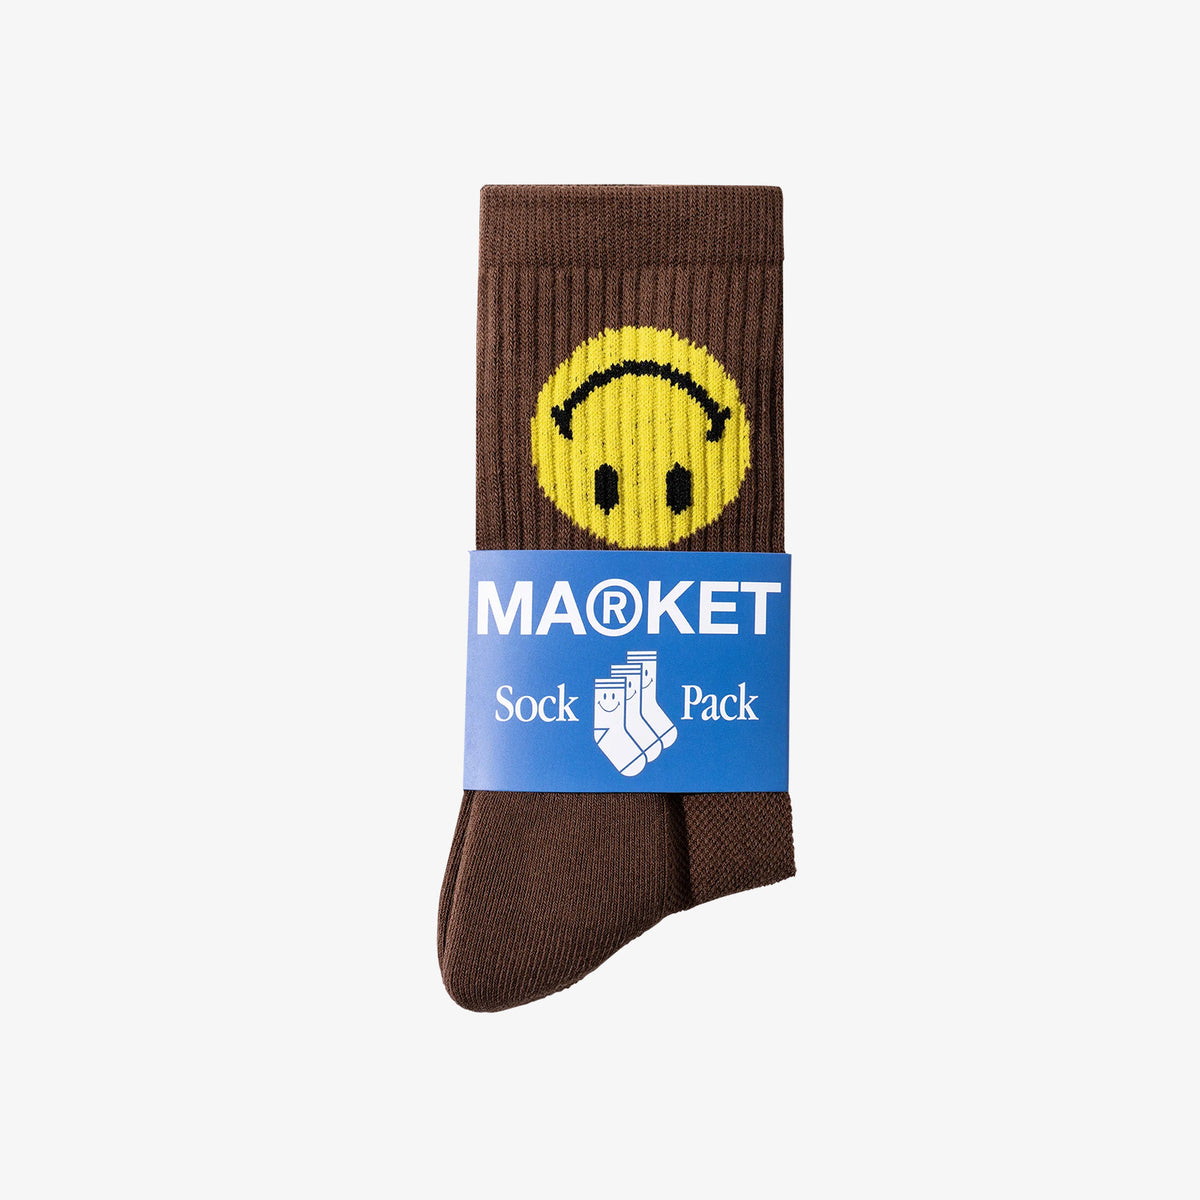 Smiley Upside Down Socks - Brown